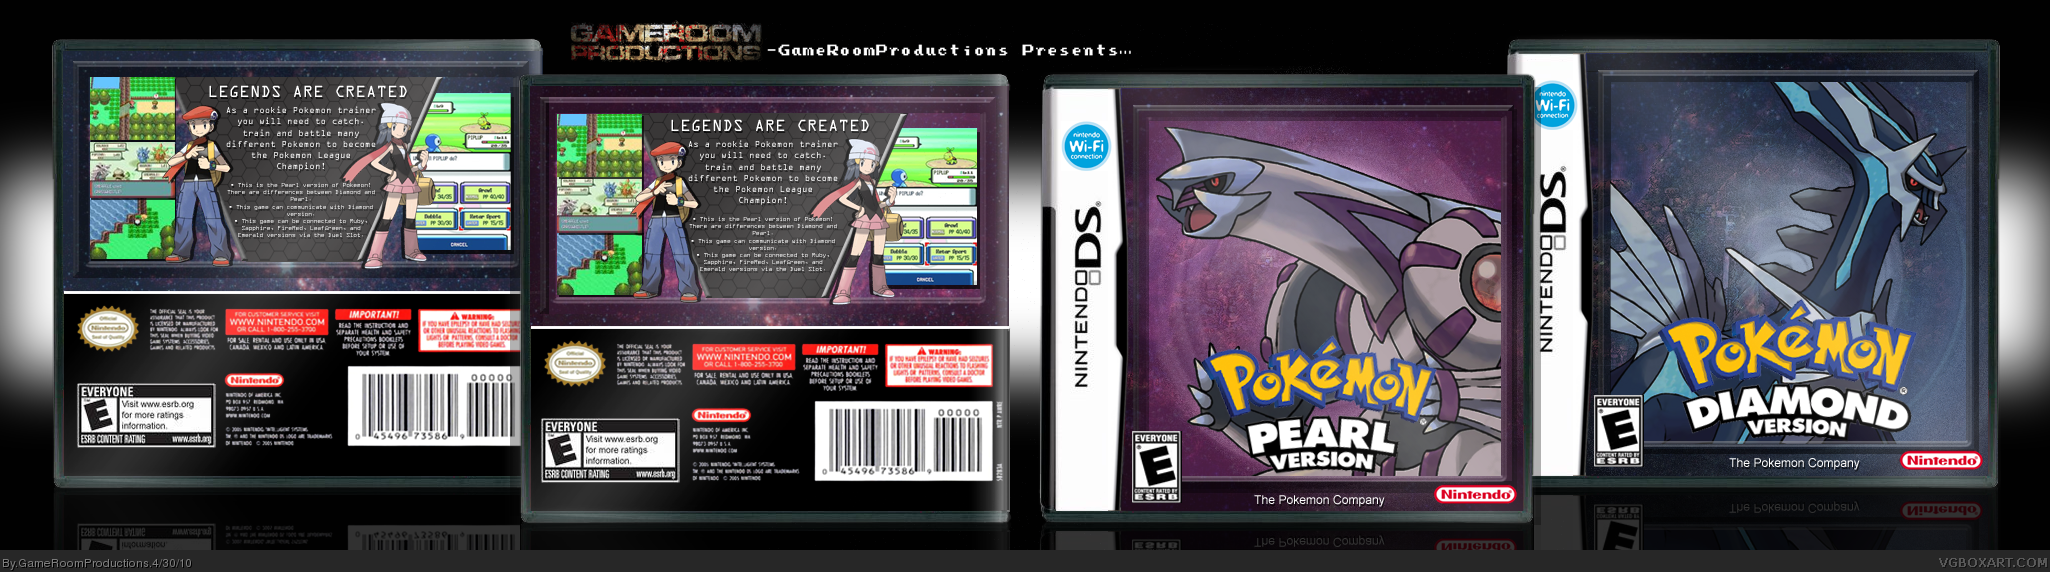 Pokemon Diamond and Pearl Versions box cover